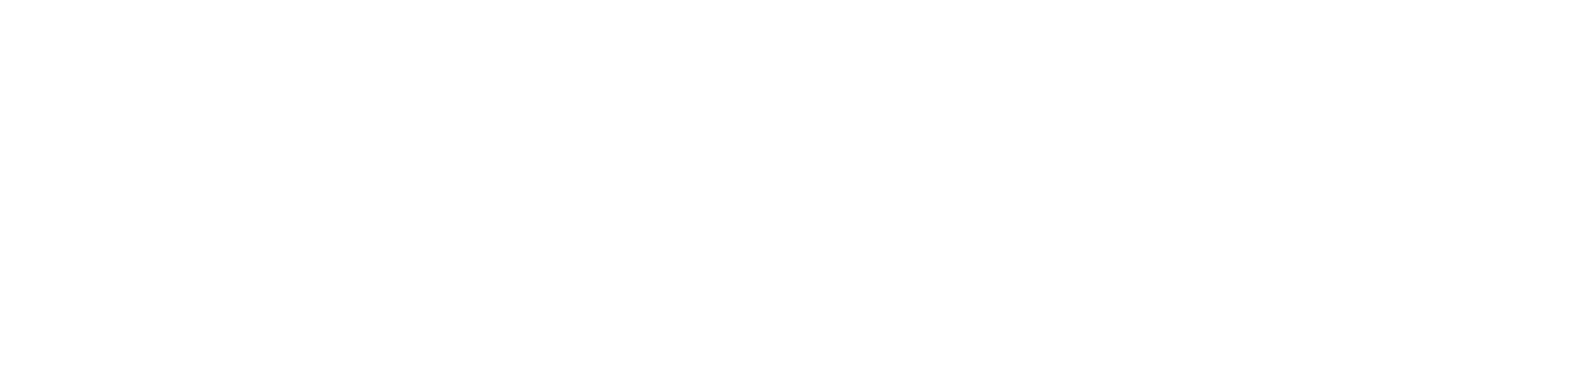 1-800-PetMeds
 logo large for dark backgrounds (transparent PNG)